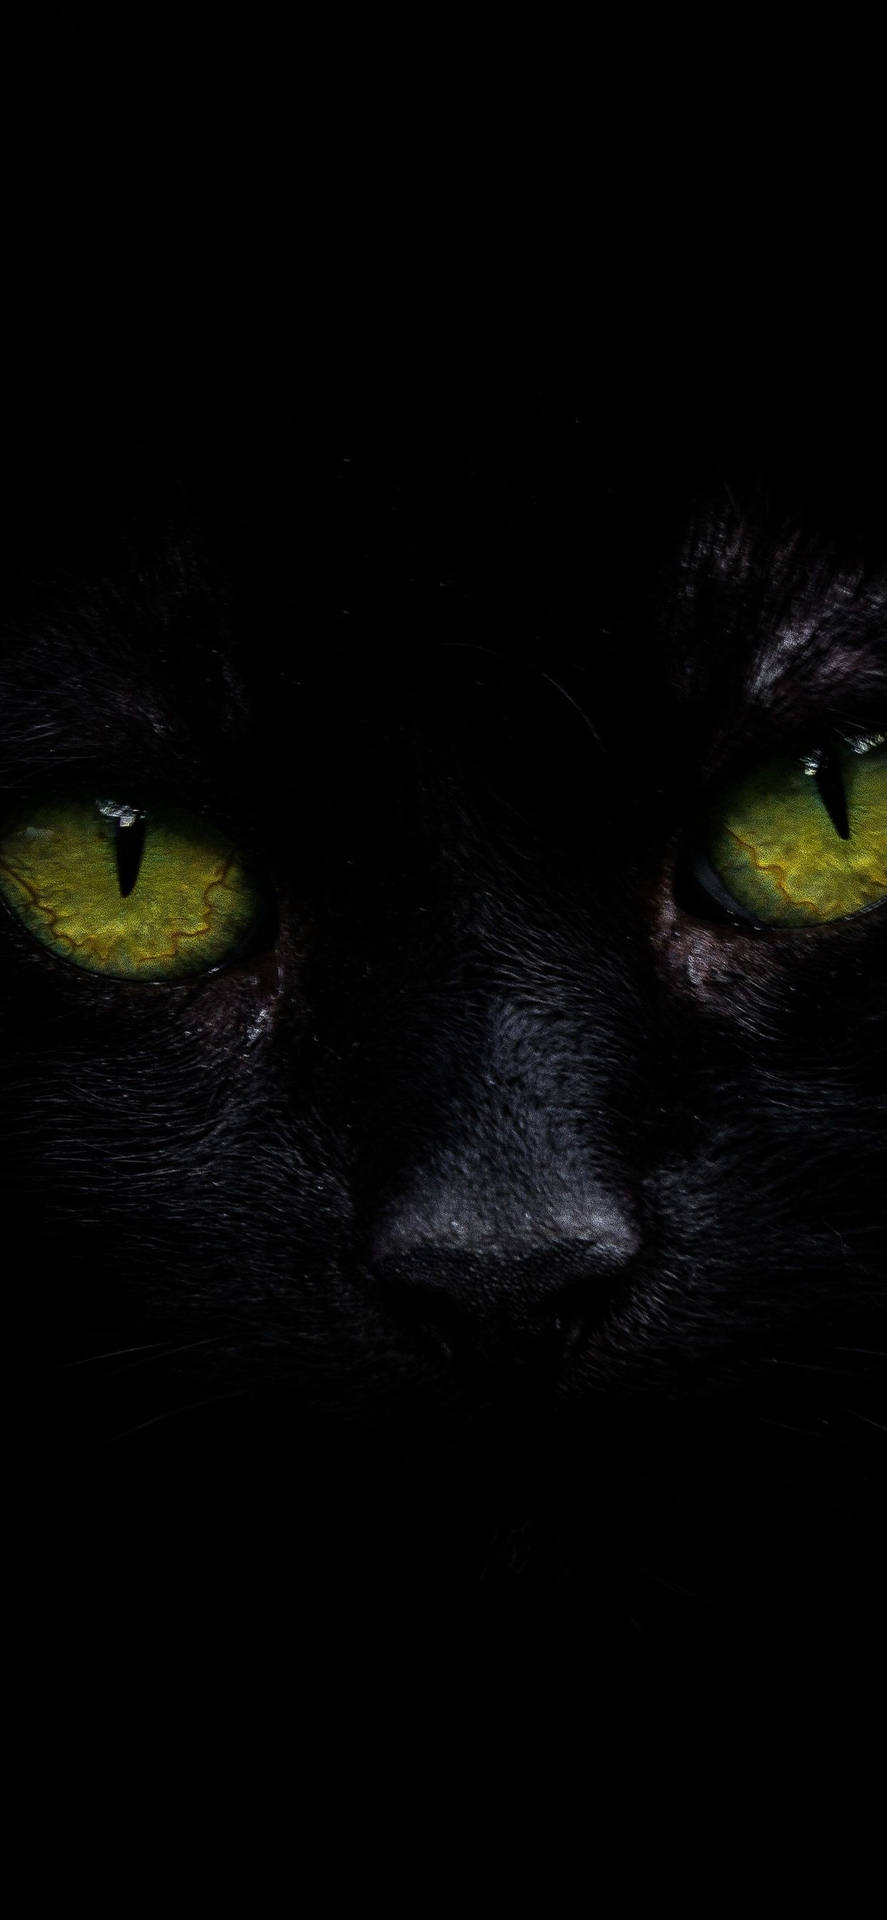 Iphone Xs Max Oled Black Cat Picture